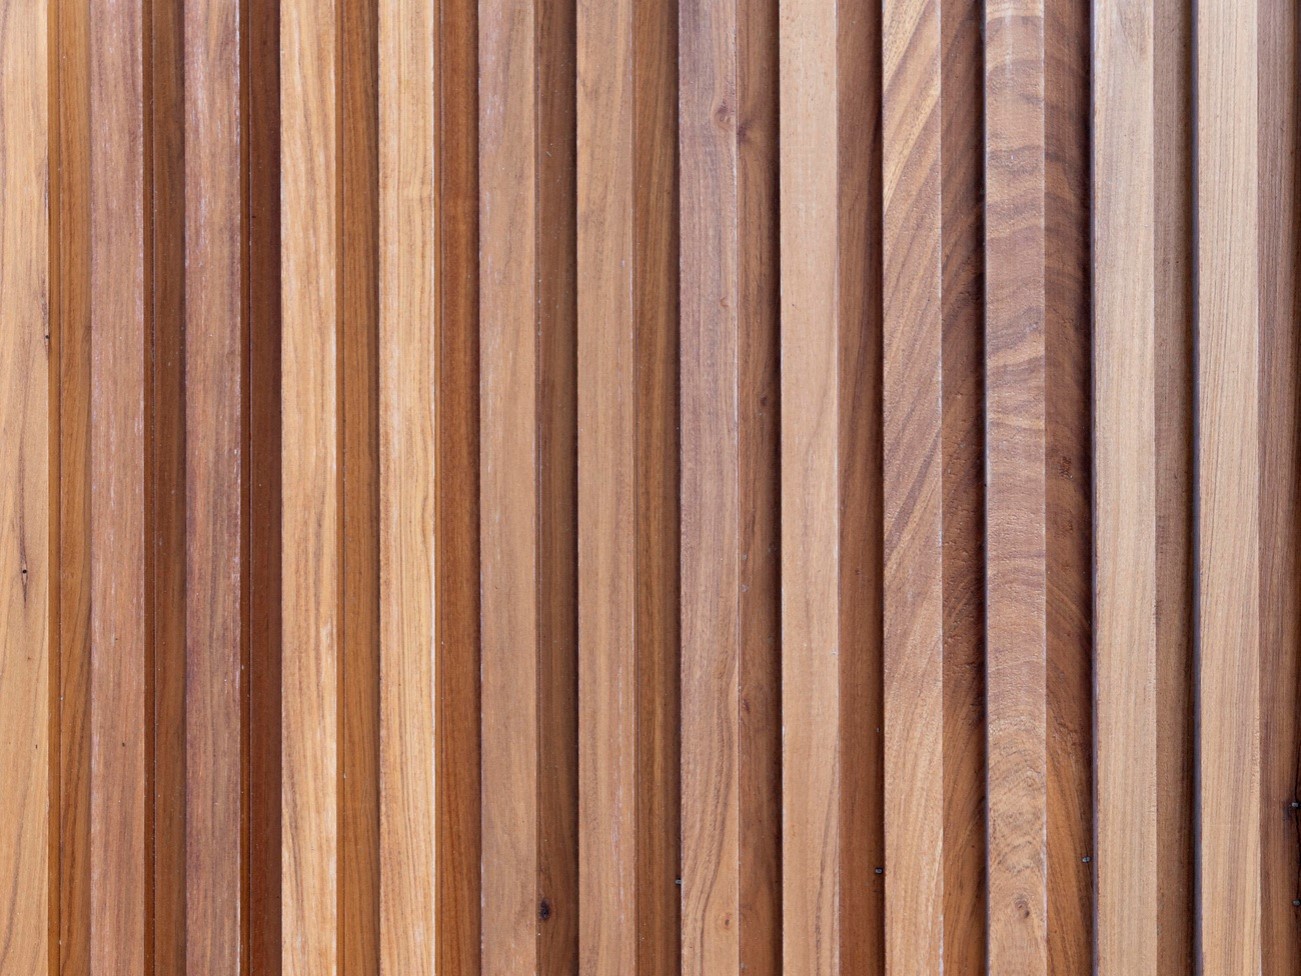 Vertical Wooden cladding in dark brown